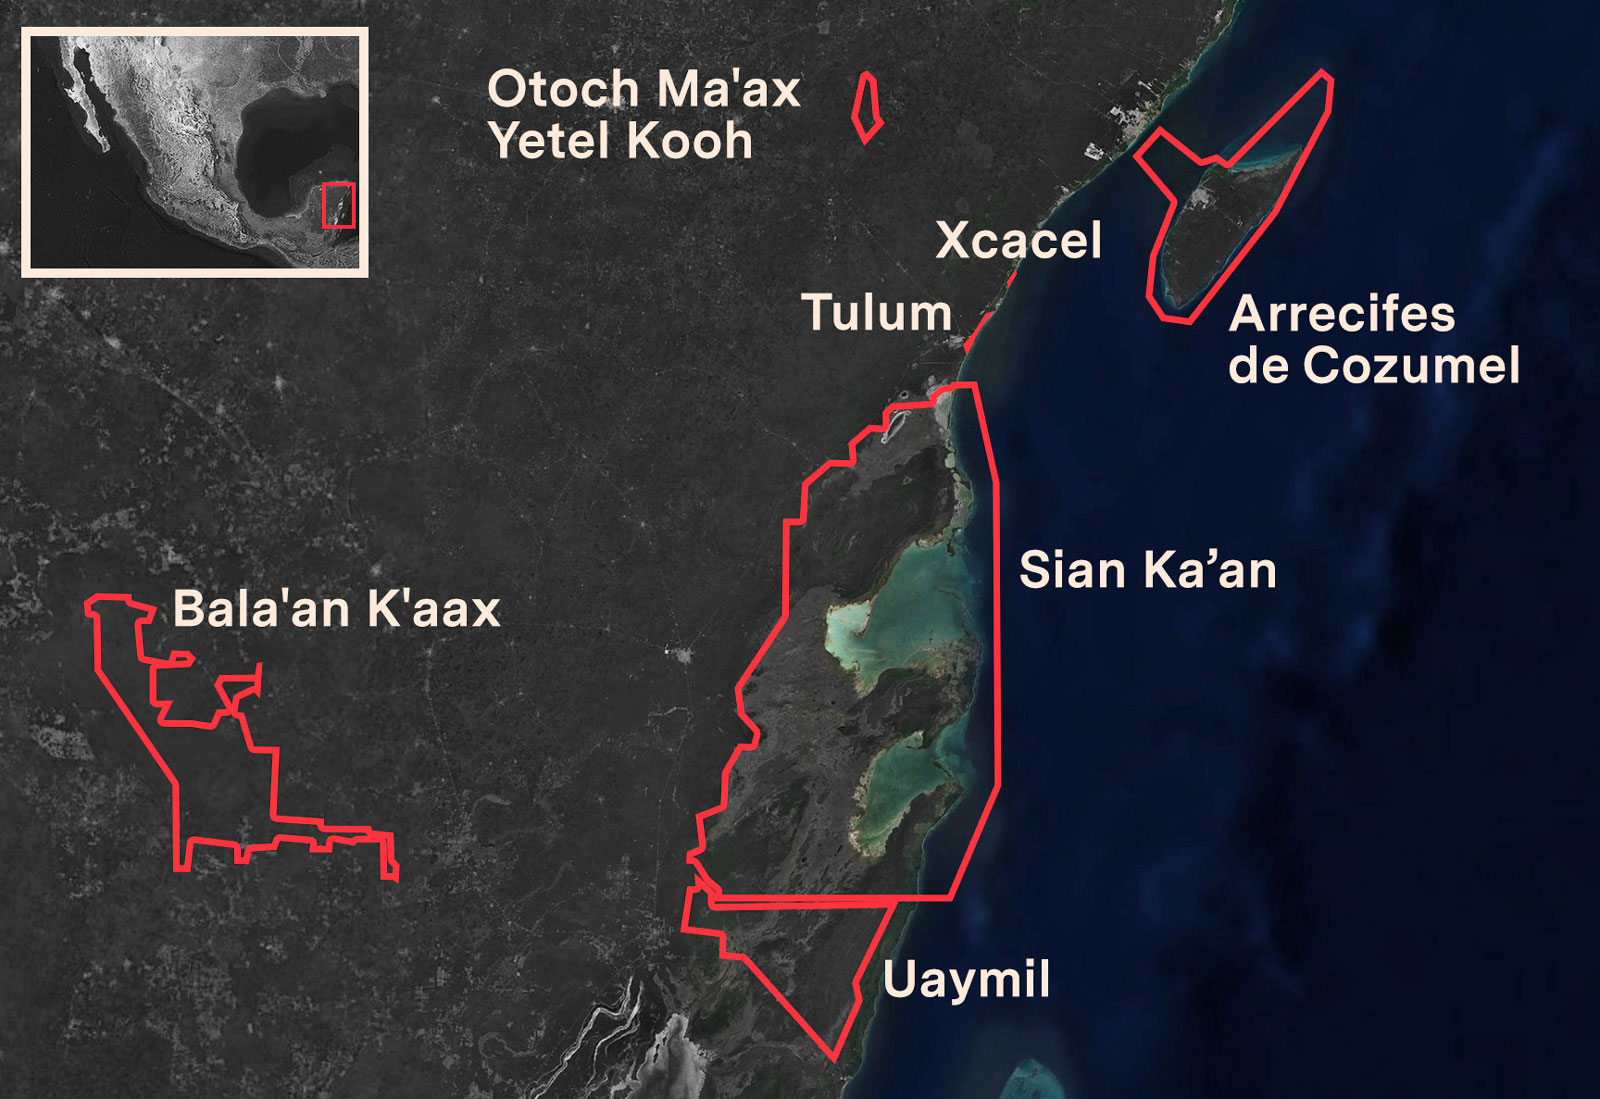 Polígonos de áreas naturales protegidas de los órdenes federal y estatal en el
                            municipio de Tulum, Quintana Roo